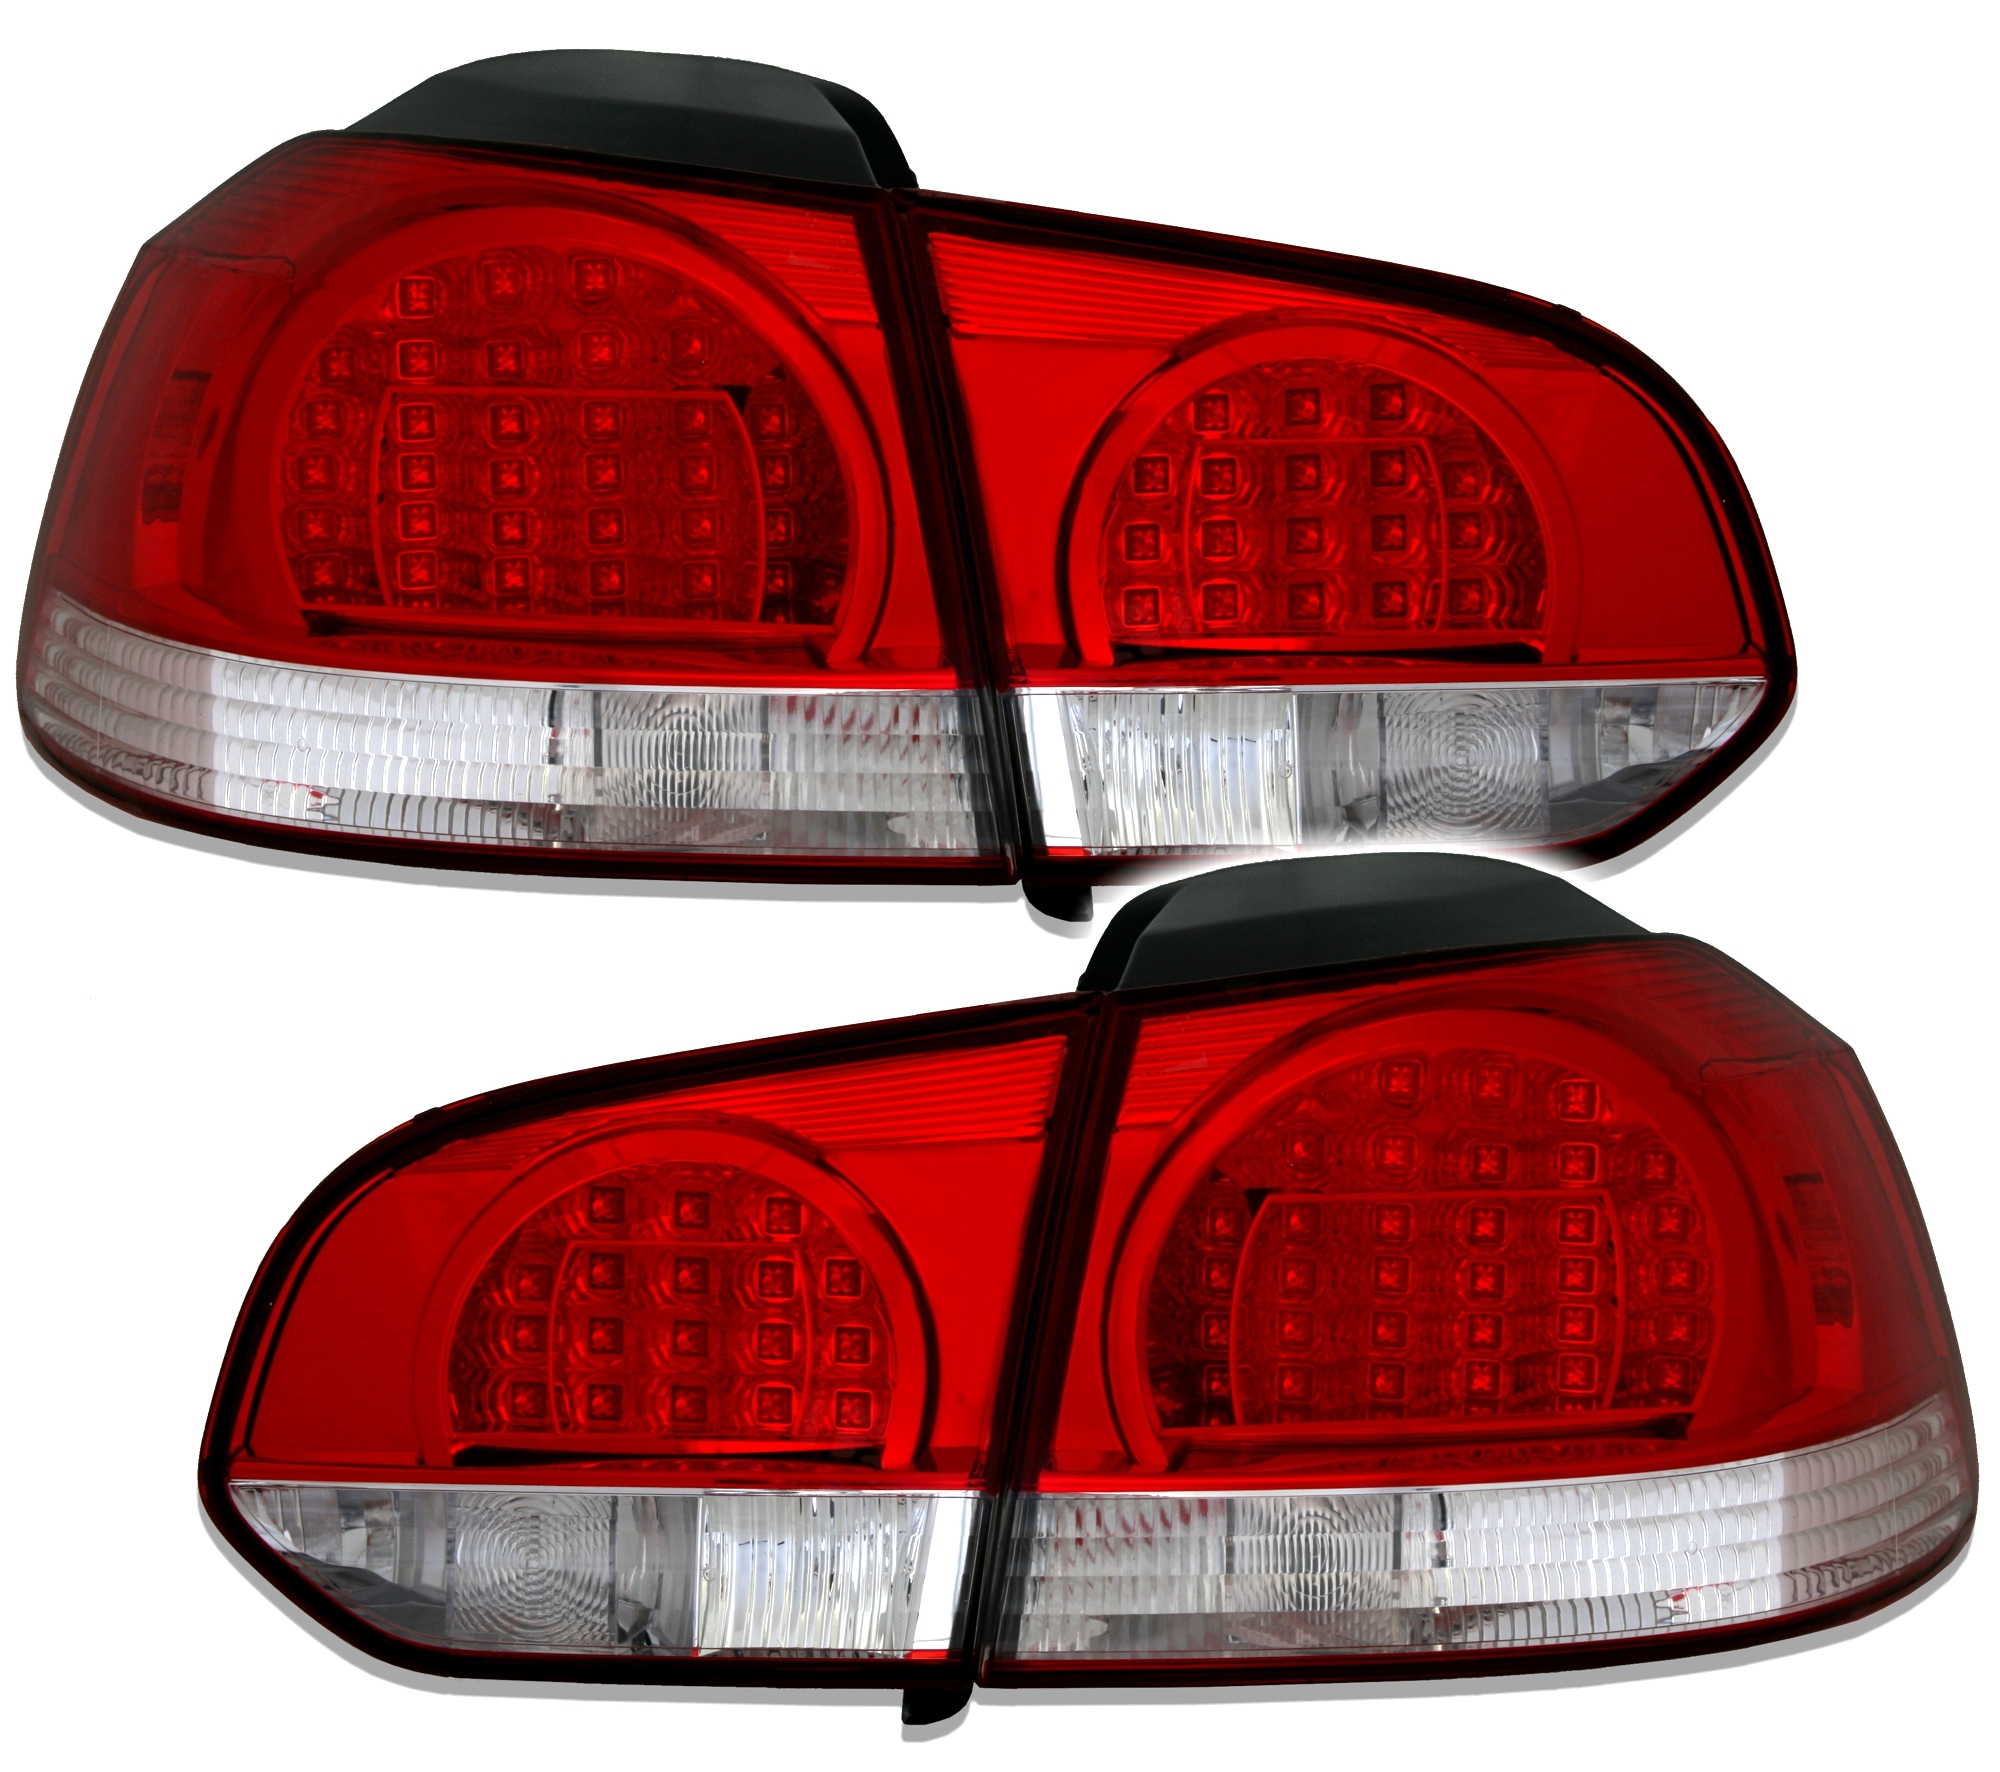 VW Golf 6 LED Rückleuchten Rot-Weiß R-Design